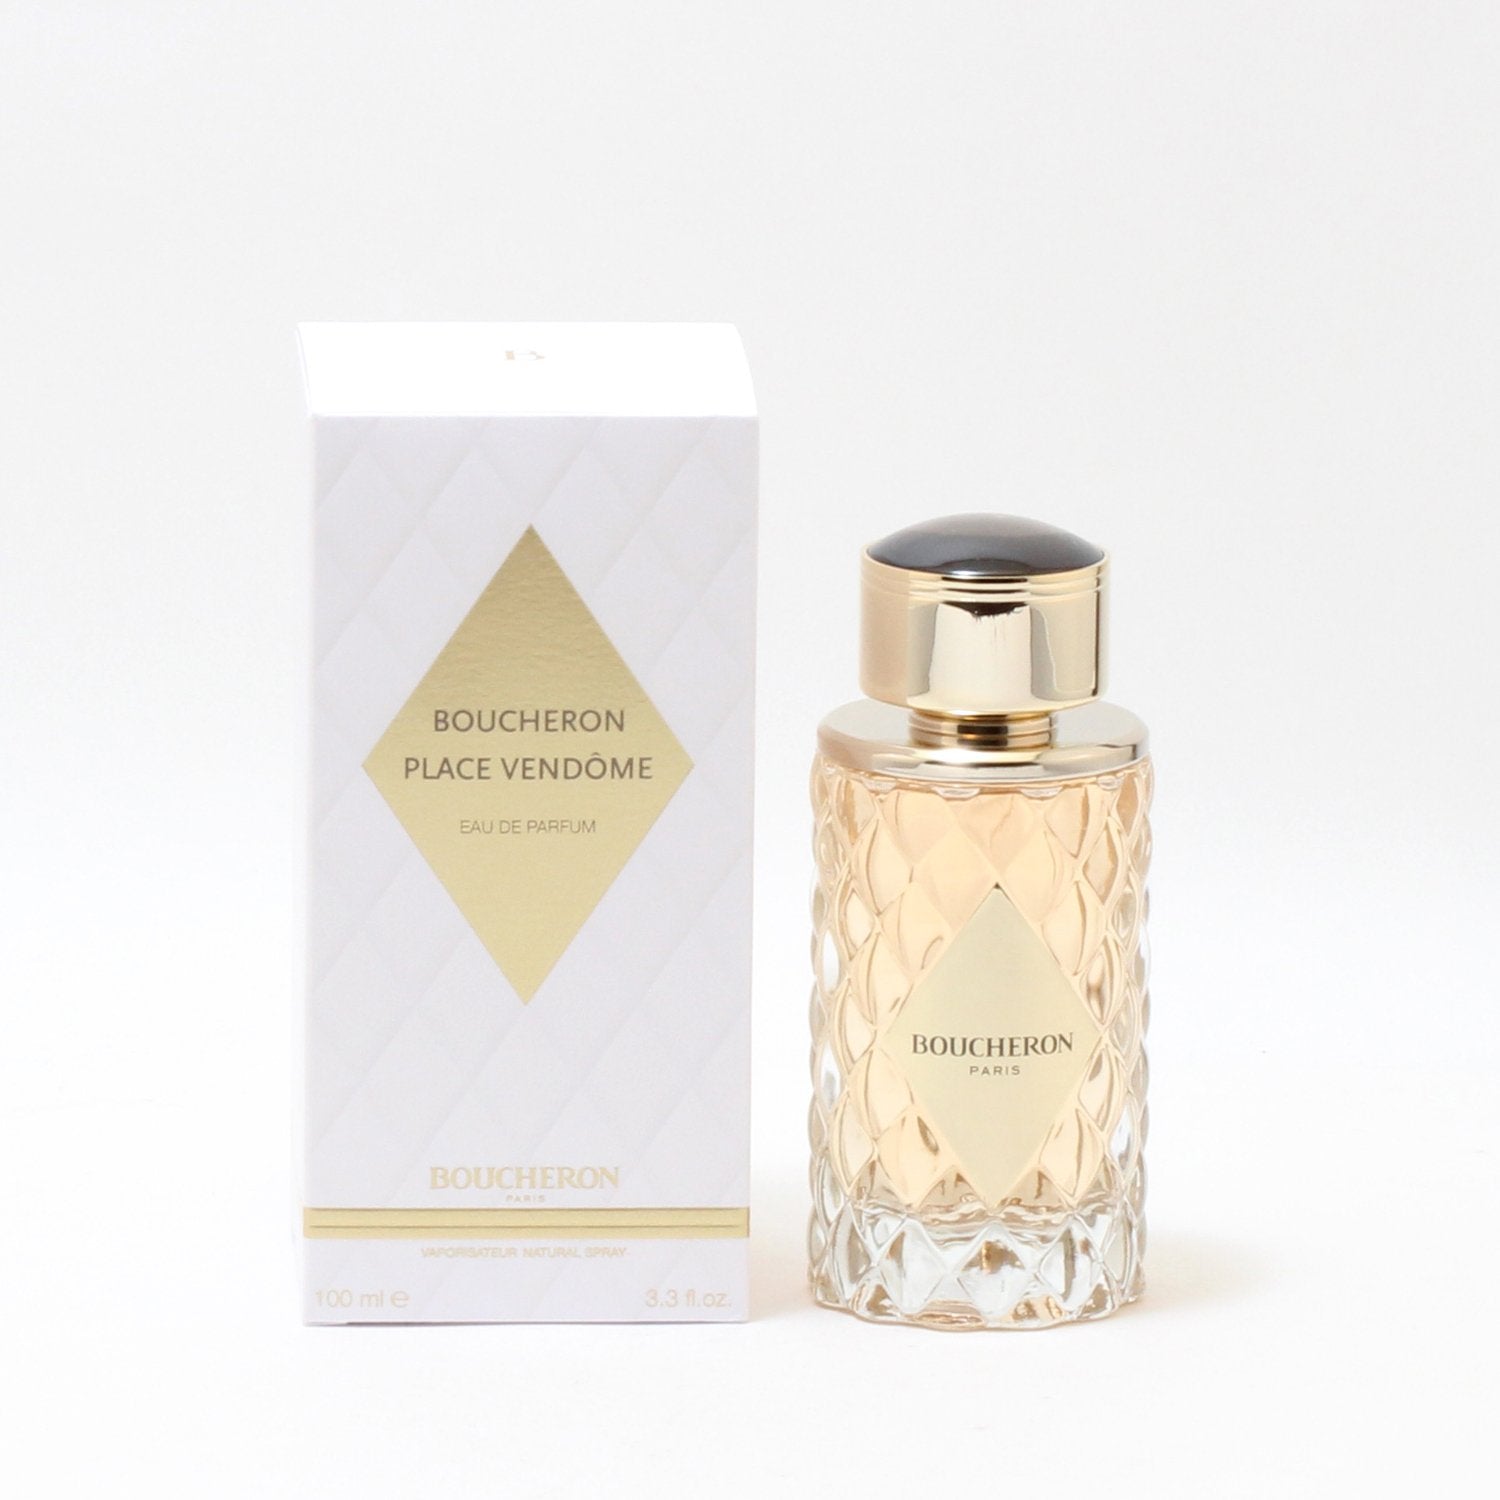 Perfume - PLACE VENDOME FOR WOMEN BY BOUCHERON - EAU DE PARFUM SPRAY, 3.3 OZ